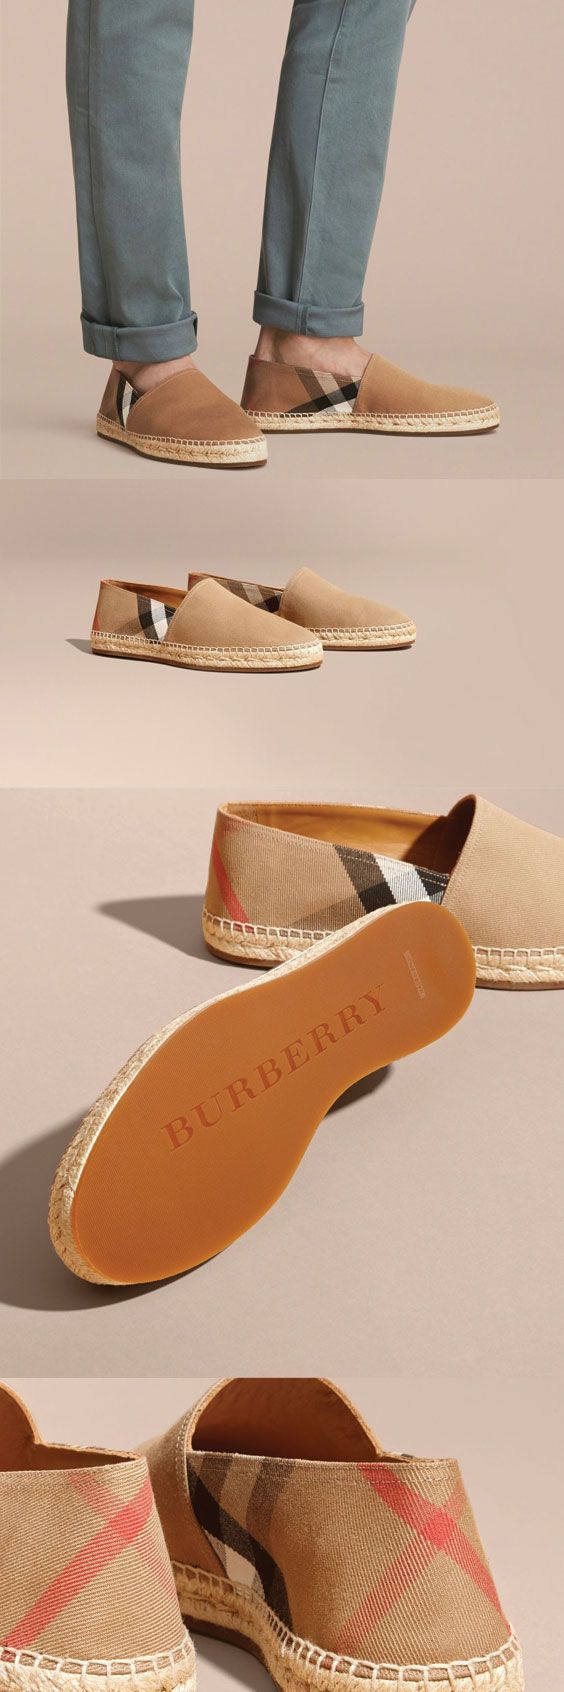 Burberry Canvas Check Espadrilles $395 #ads men shoes...